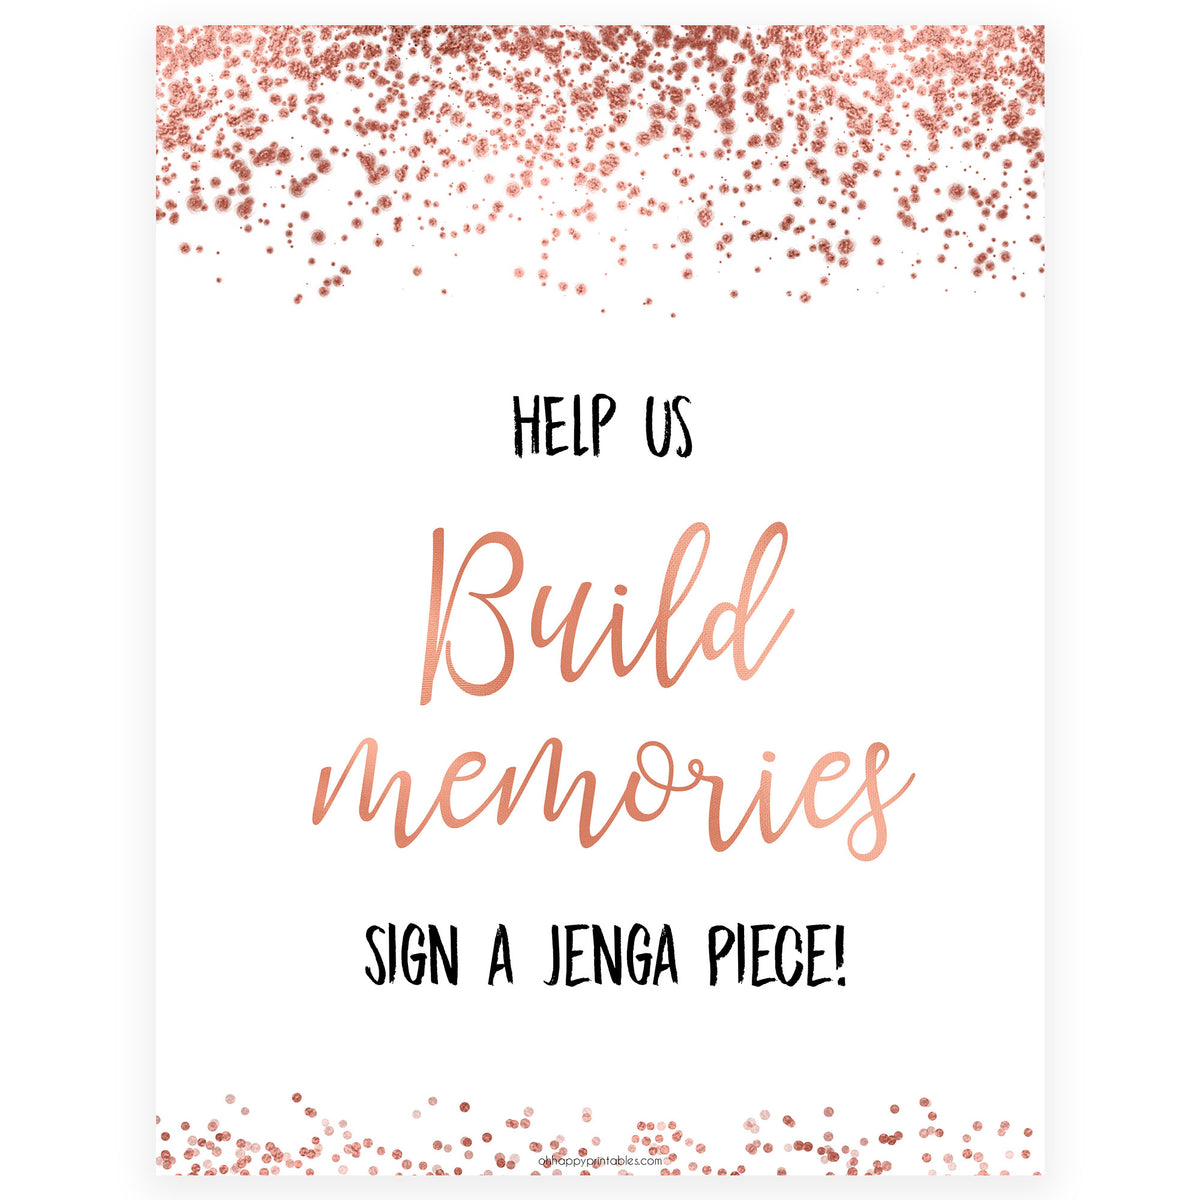 Build Memories Jenga Sign - Rose Gold Foil